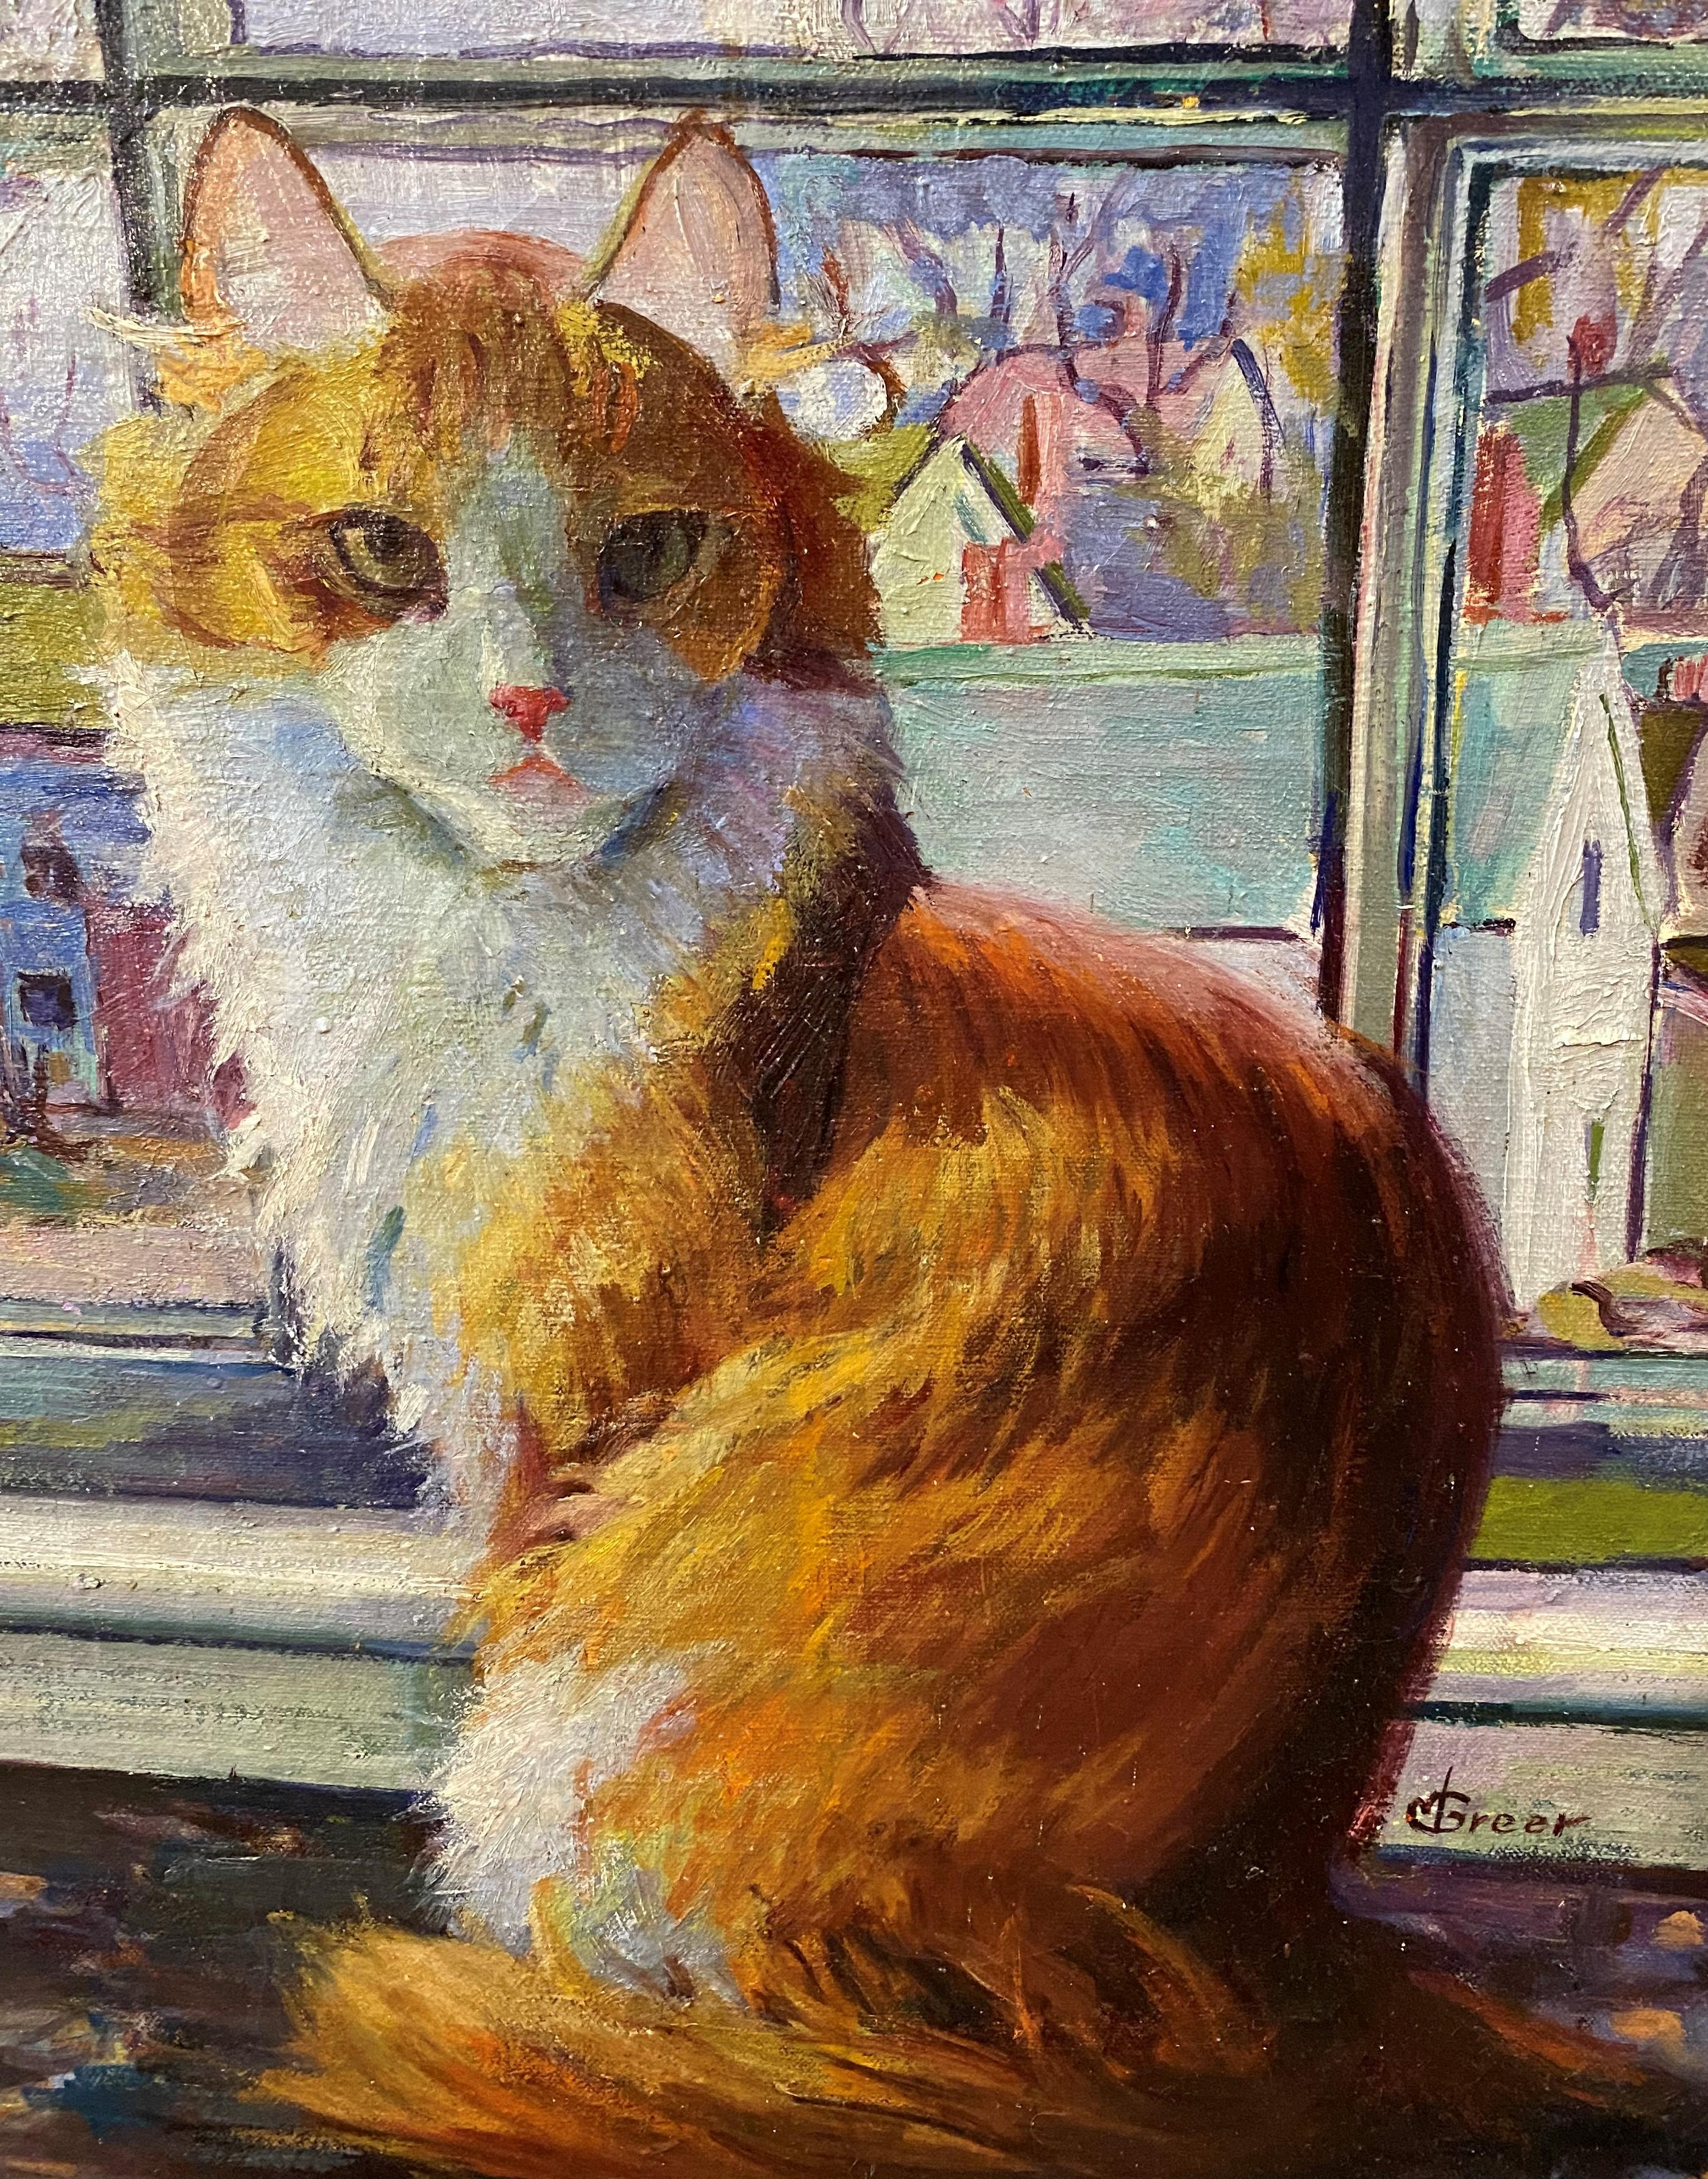 Une belle peinture à l'huile figurative d'un chat dans la fenêtre avec une vue sur le front de mer, peut-être de Gloucester,  de l'artiste américaine Mabel Greer (1880-1972). Née à Wellfleet, dans le Massachusetts, Greer s'est fait connaître par ses